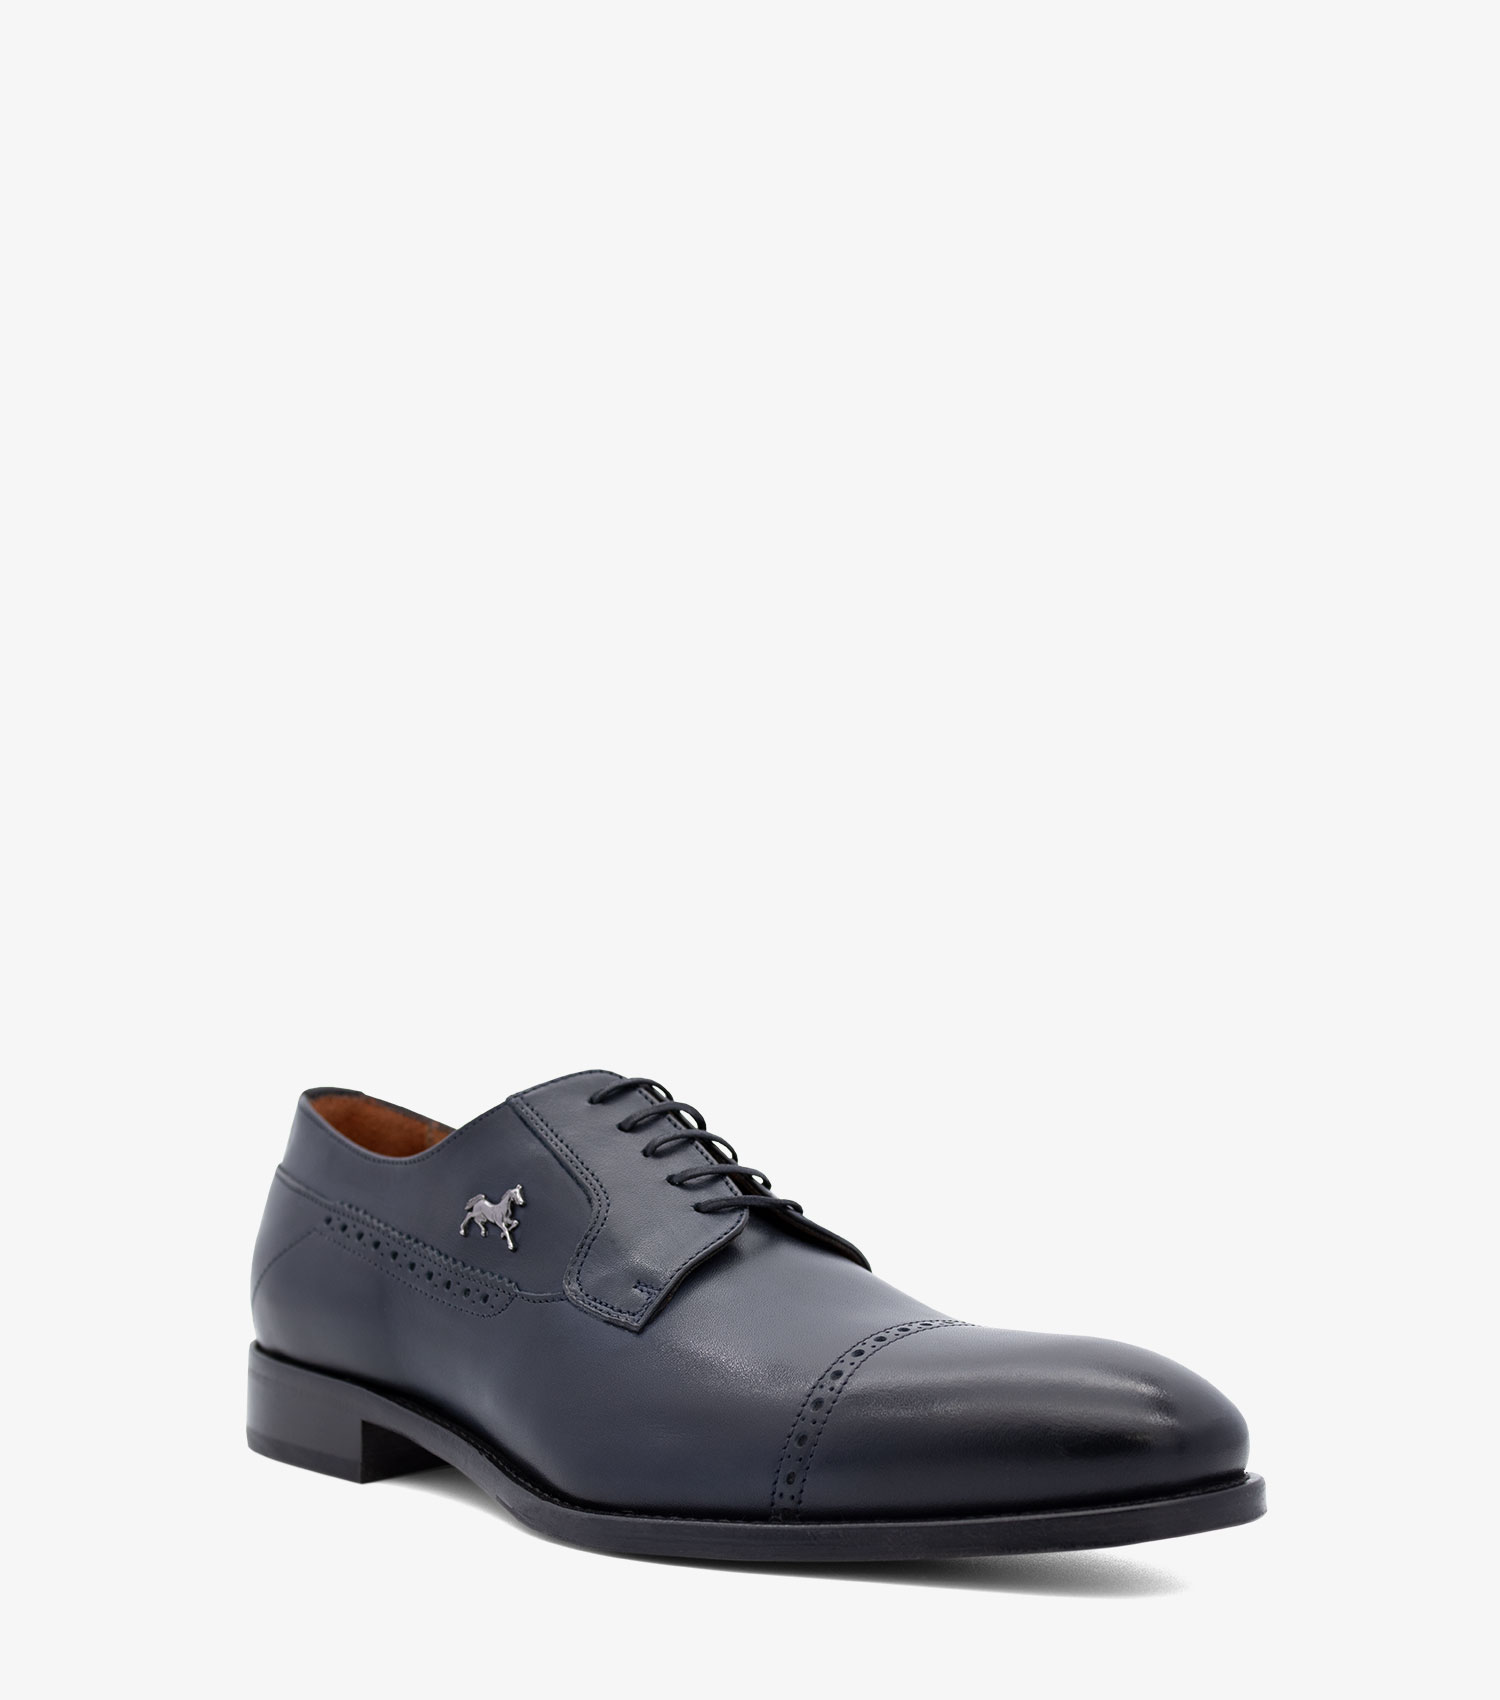 Gentleman Formal shoes